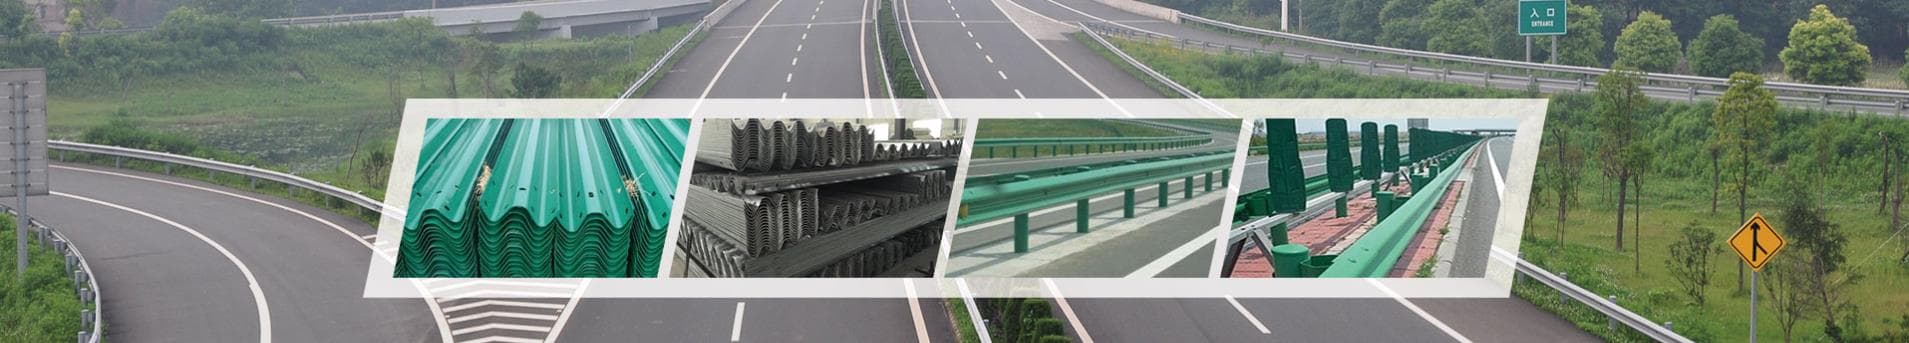 highway guardrail supplier